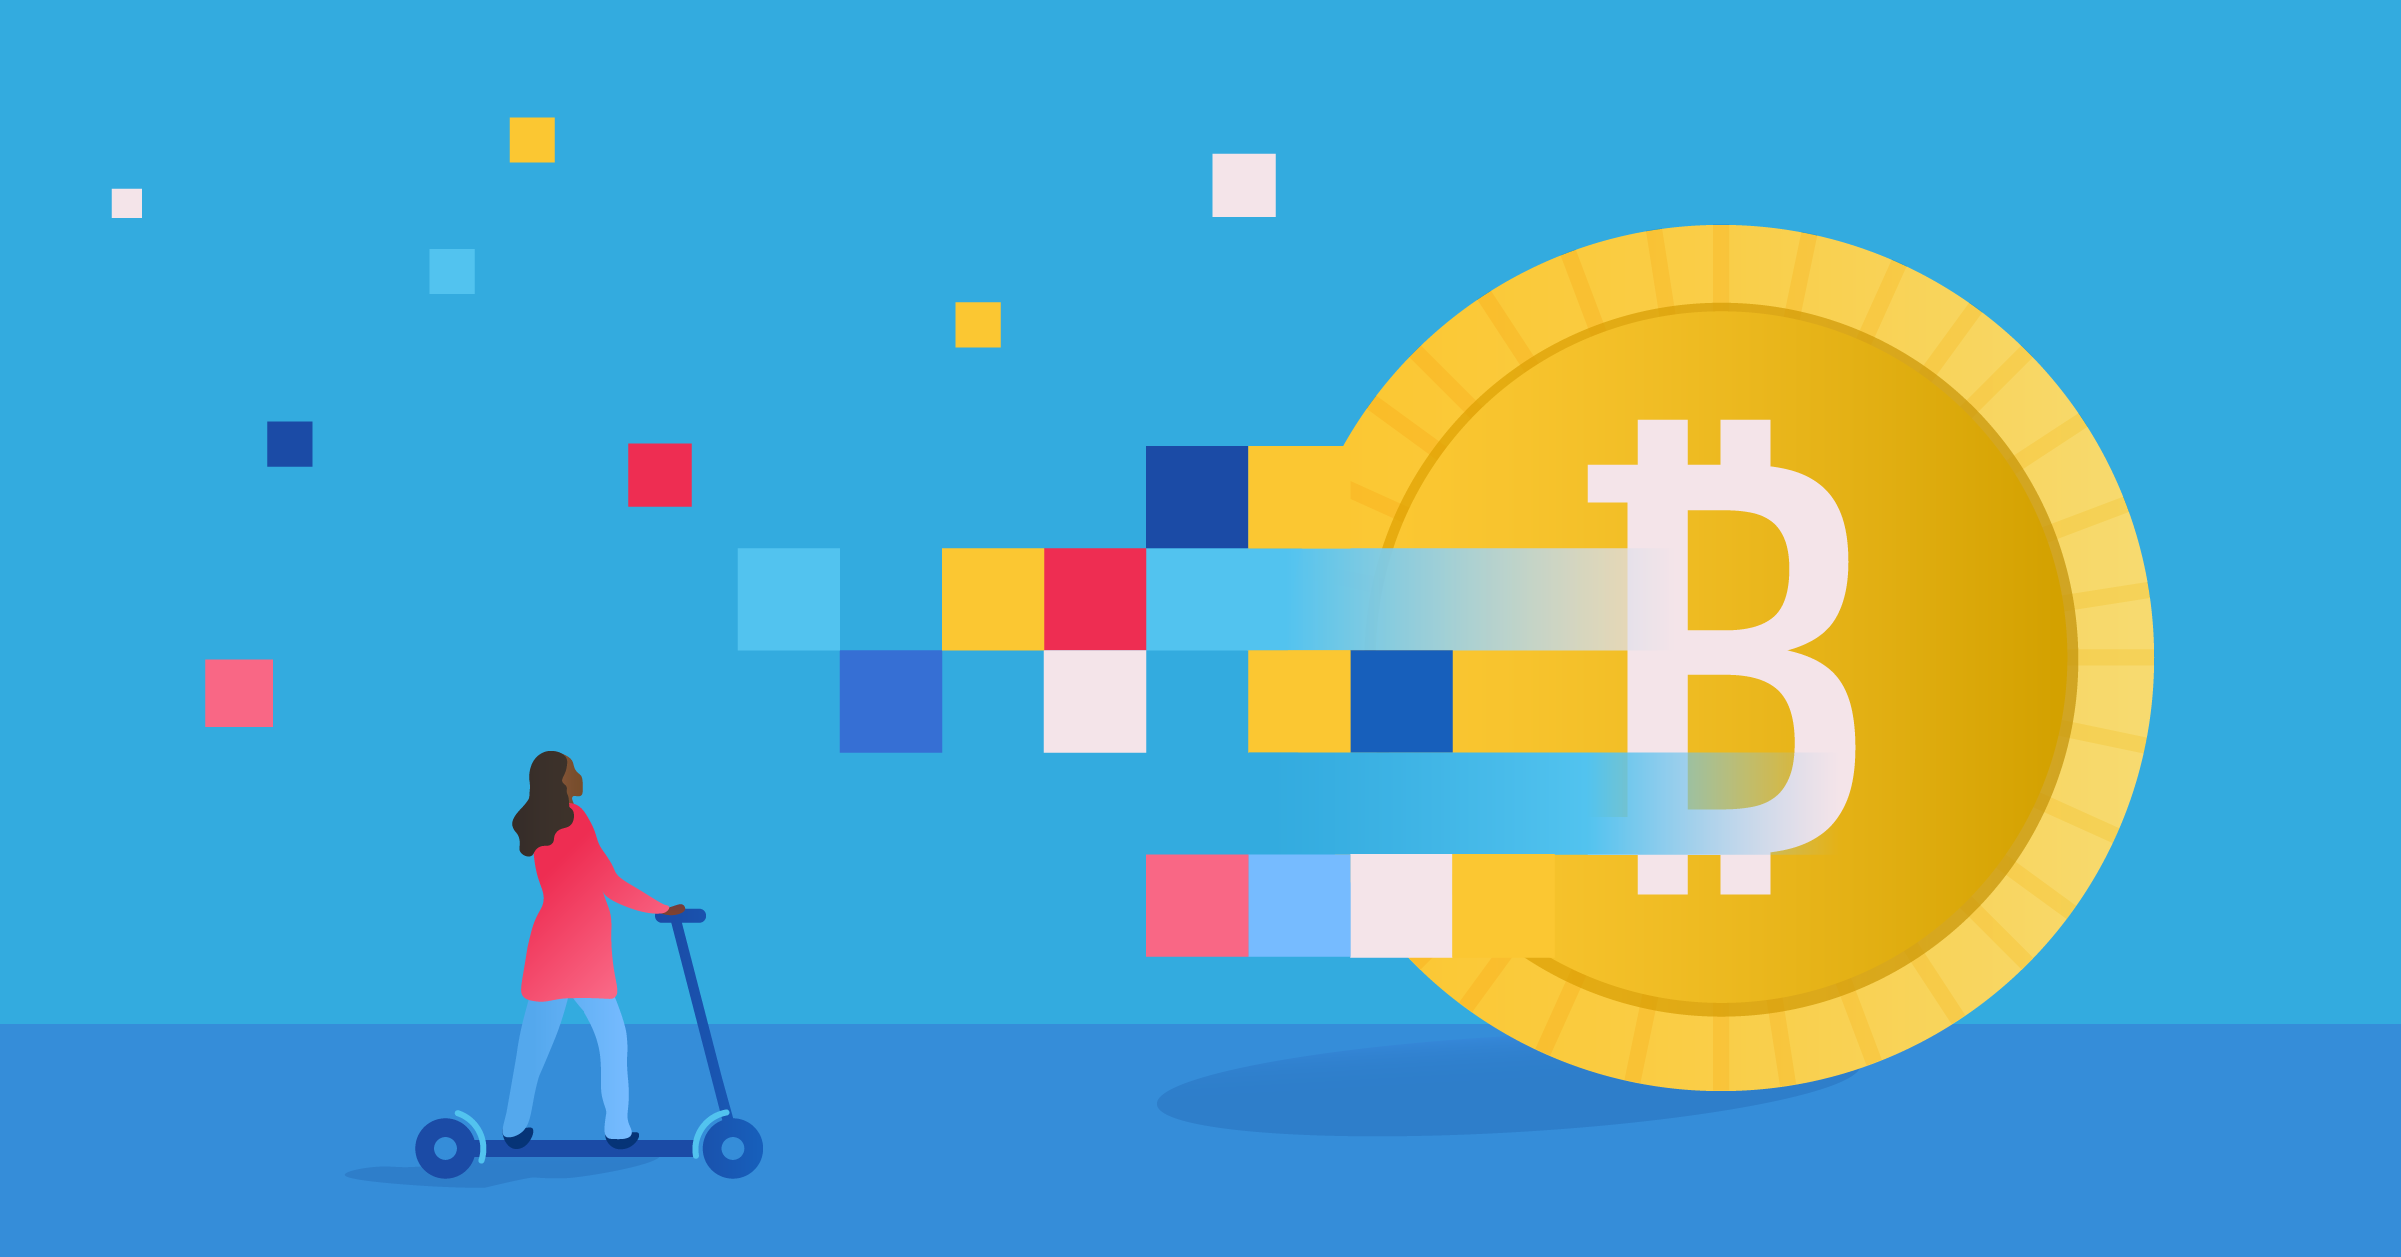 Bitcoin pixelated illustration